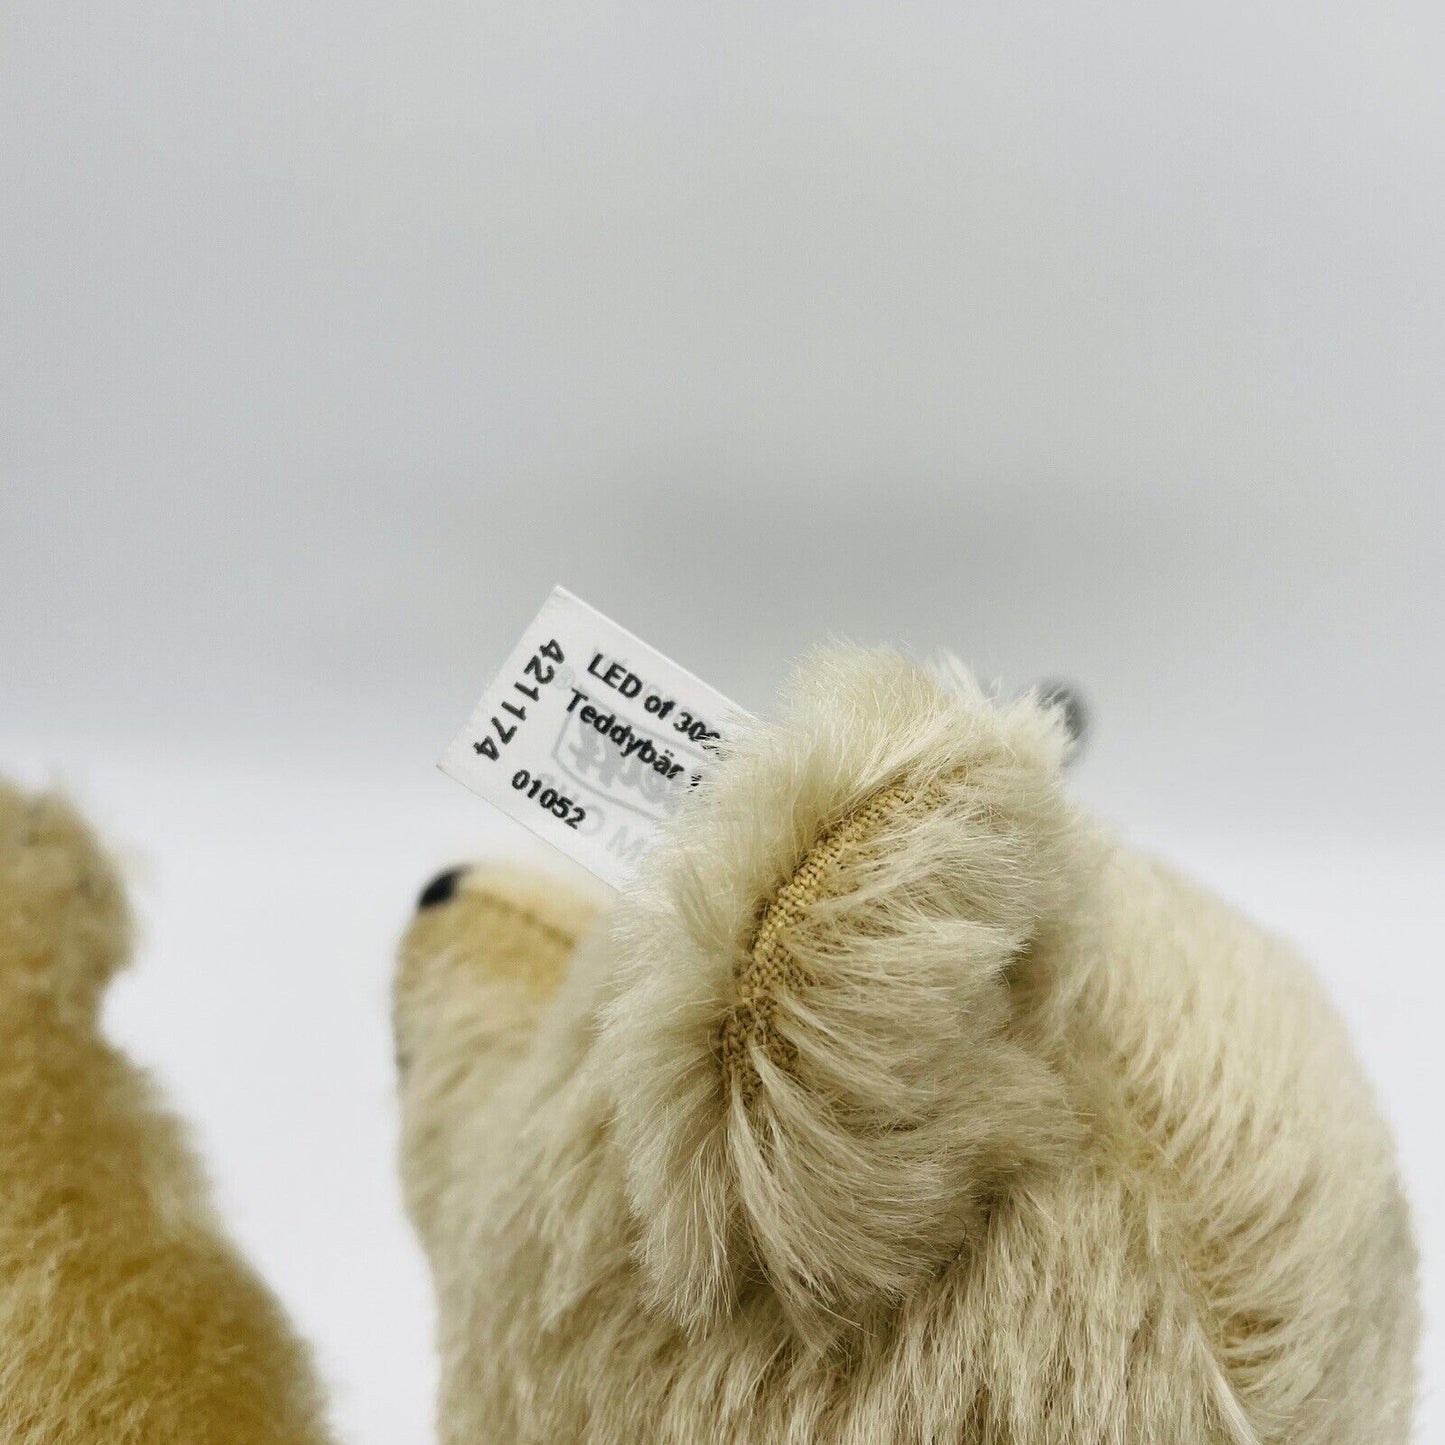 Steiff Teddybär Replica 1911 421174 aus 2011 limitiert 3000 32 cm Mohair mit DVD